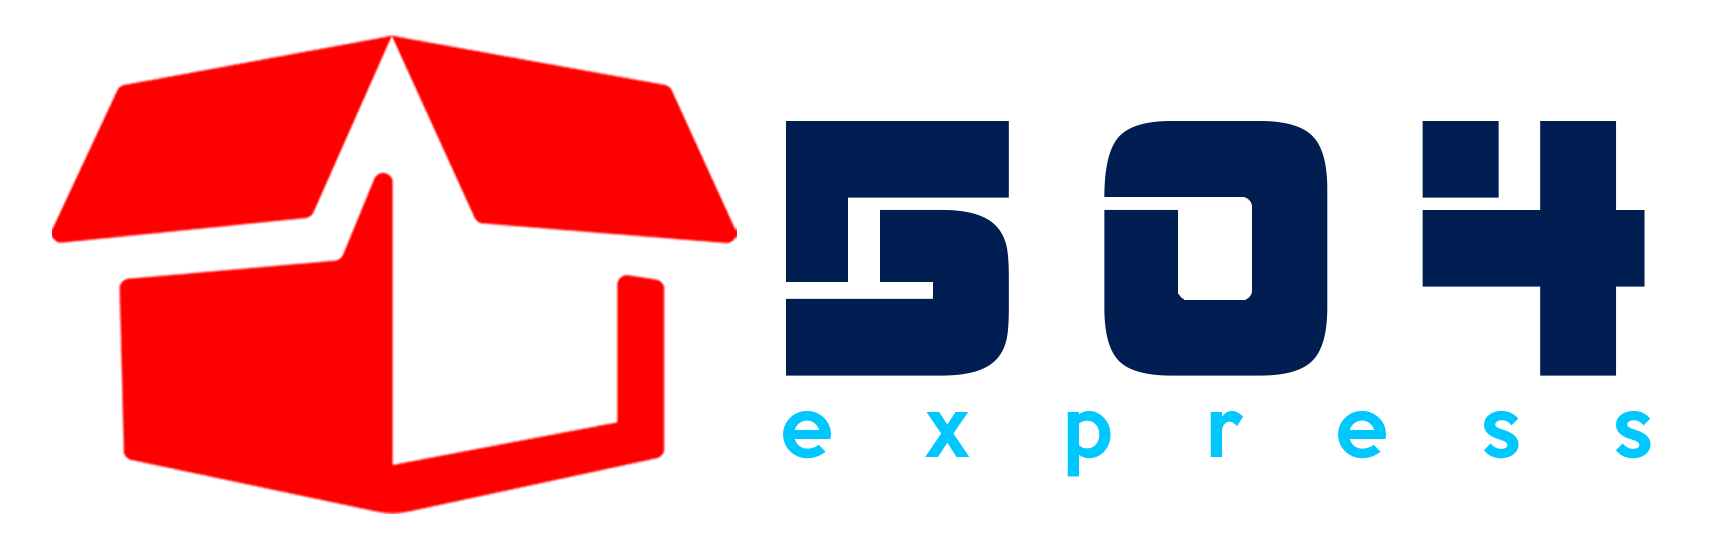 504 Express